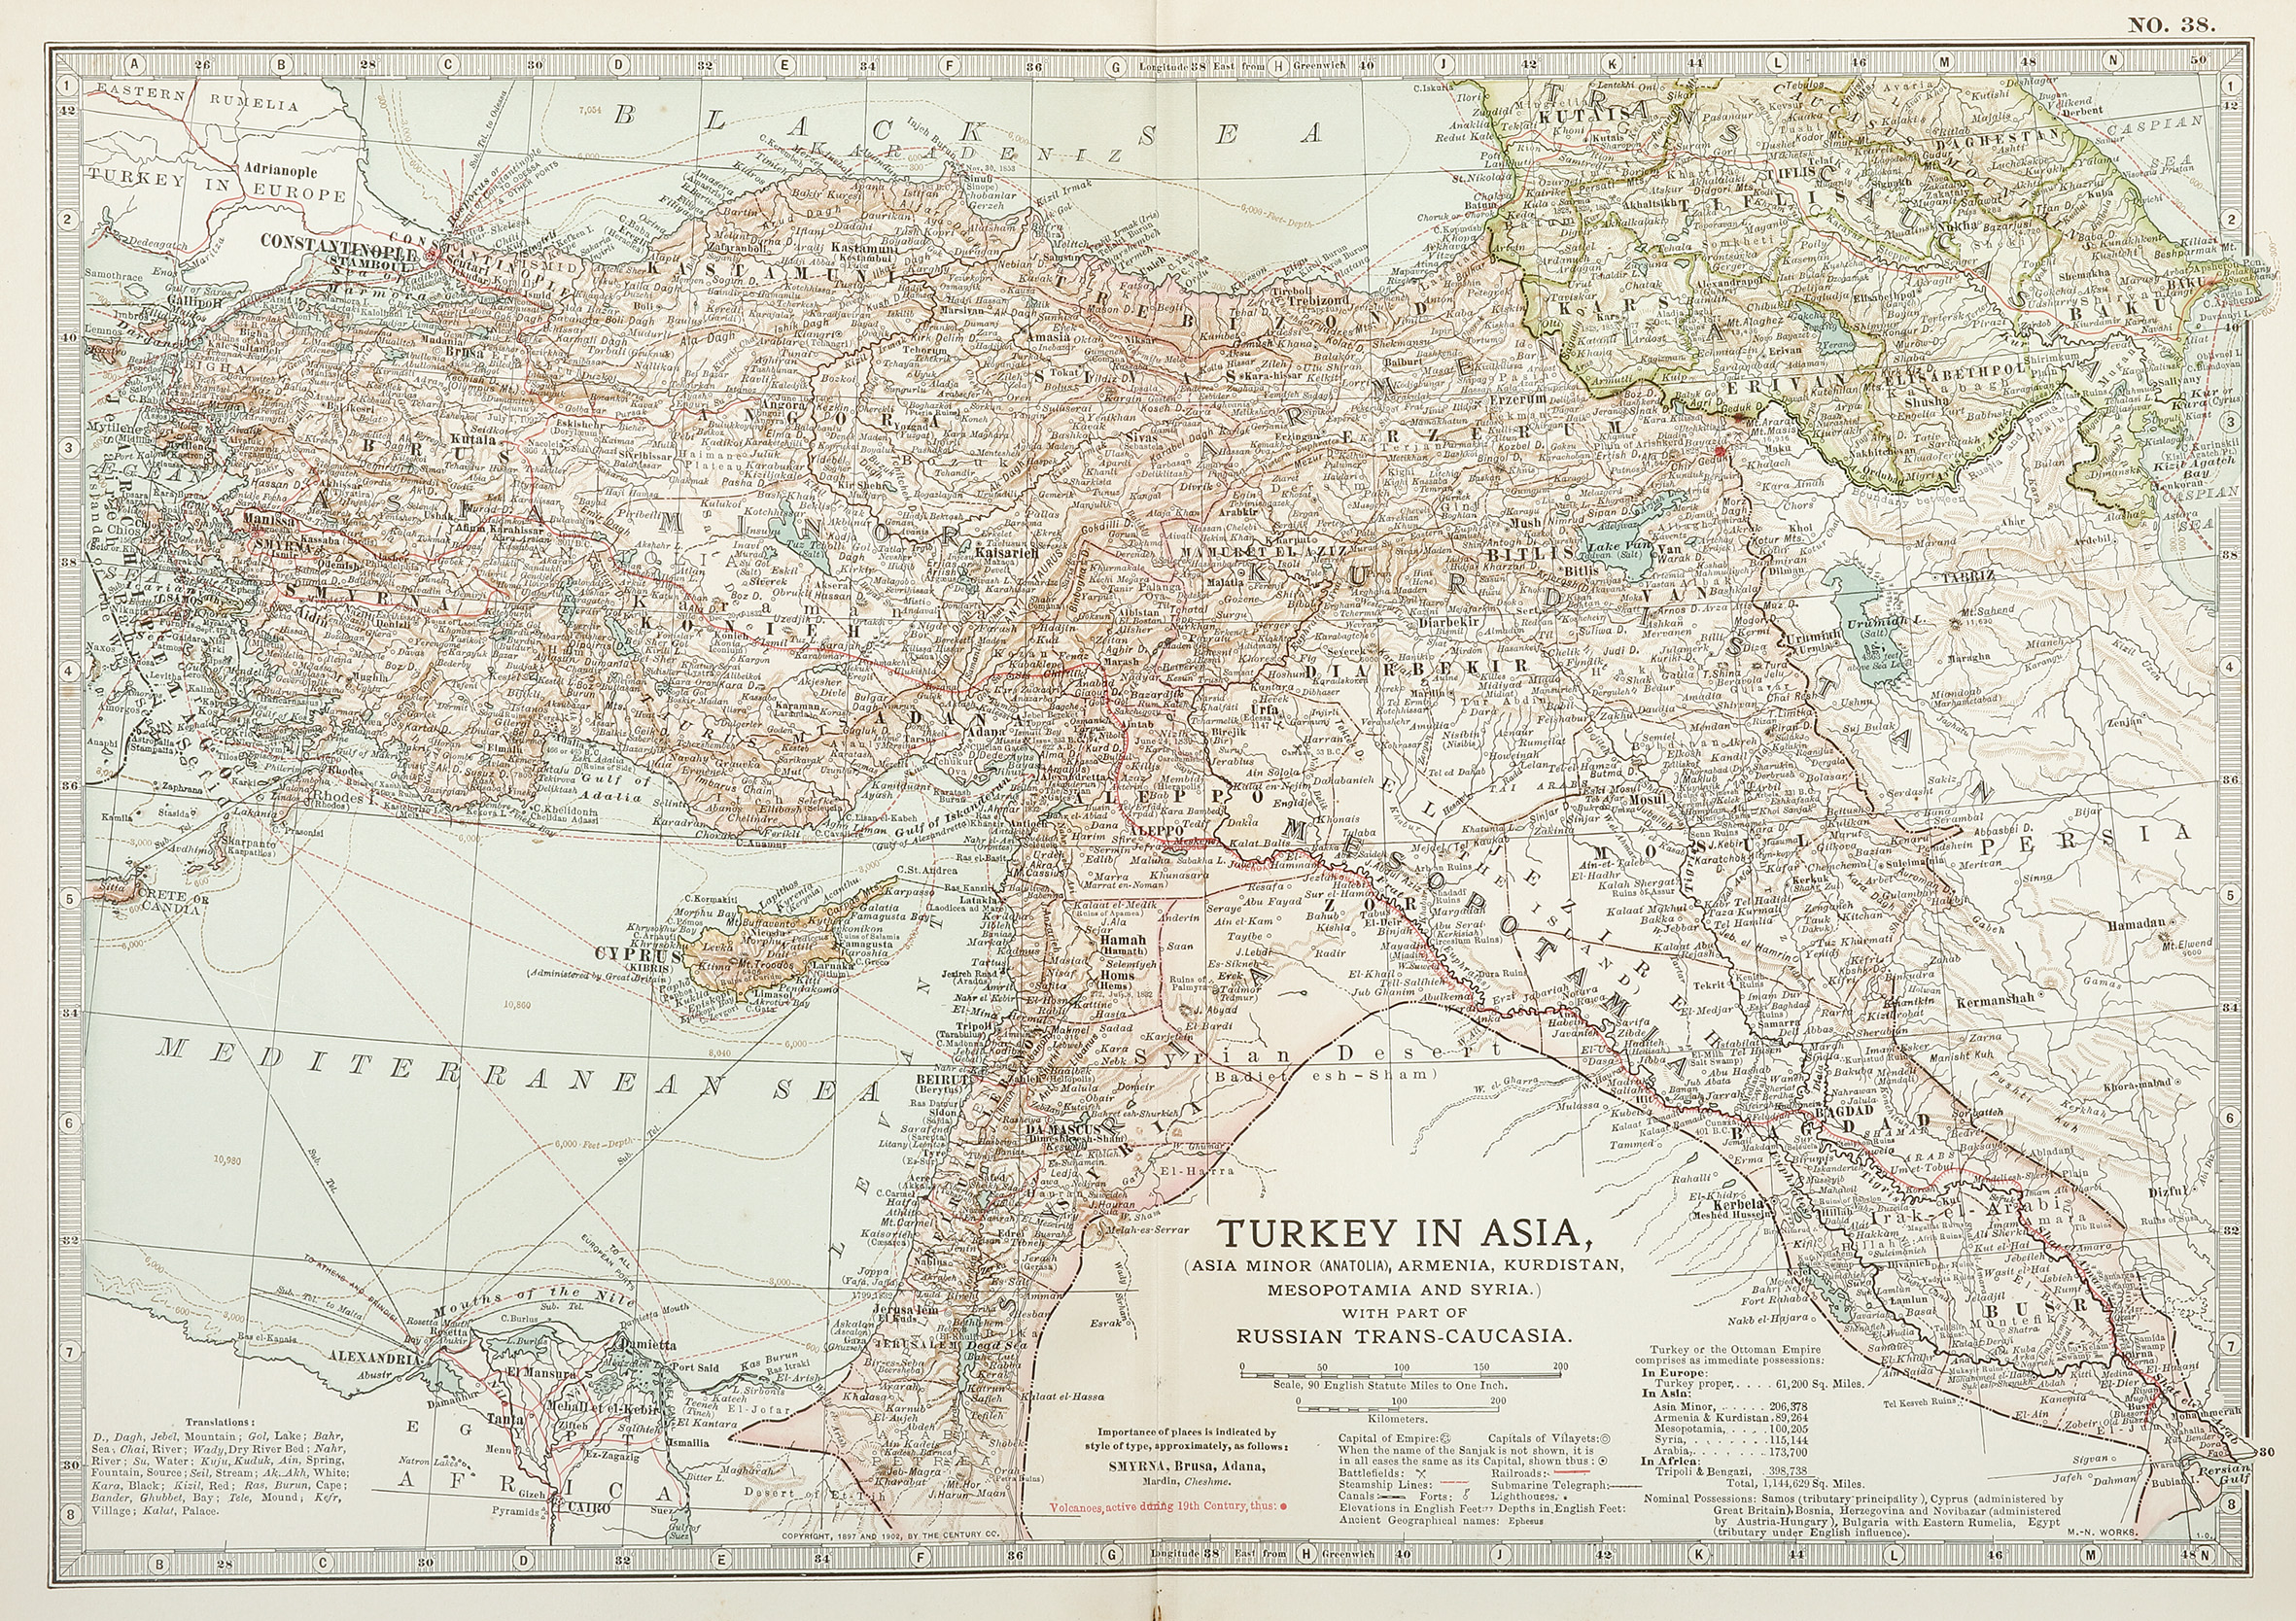 Turkey in Asia, (Asia Minor (Anatolia), Armenia, Kurdistan, Mesopotamia and Syria.) with part of Russian Trans-Caucasia. - Antique Print from 1903